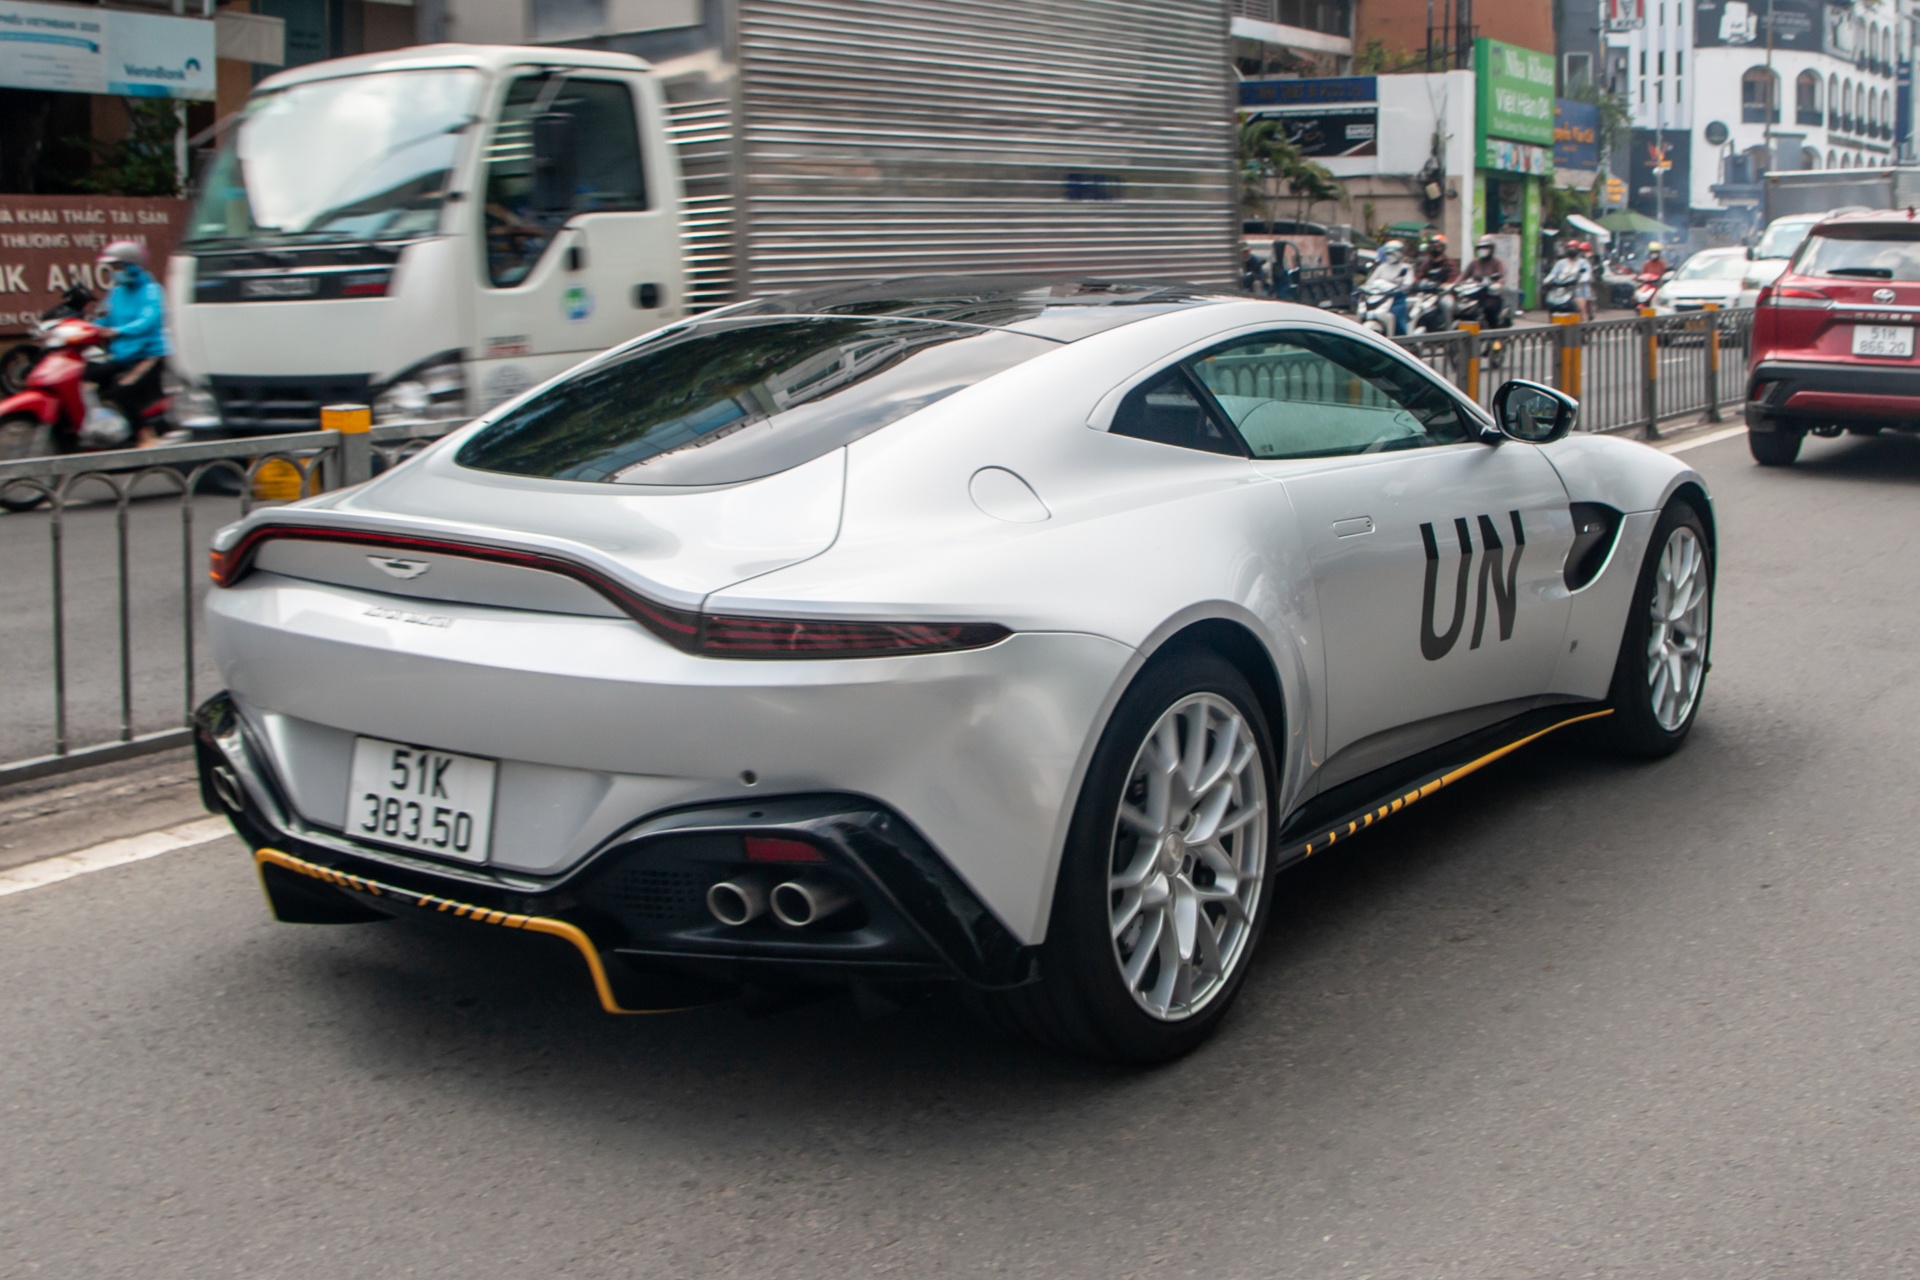 Aston Martin Vantage phiên bản 007 lần đầu lăn bánh tại Việt Nam - ảnh 14